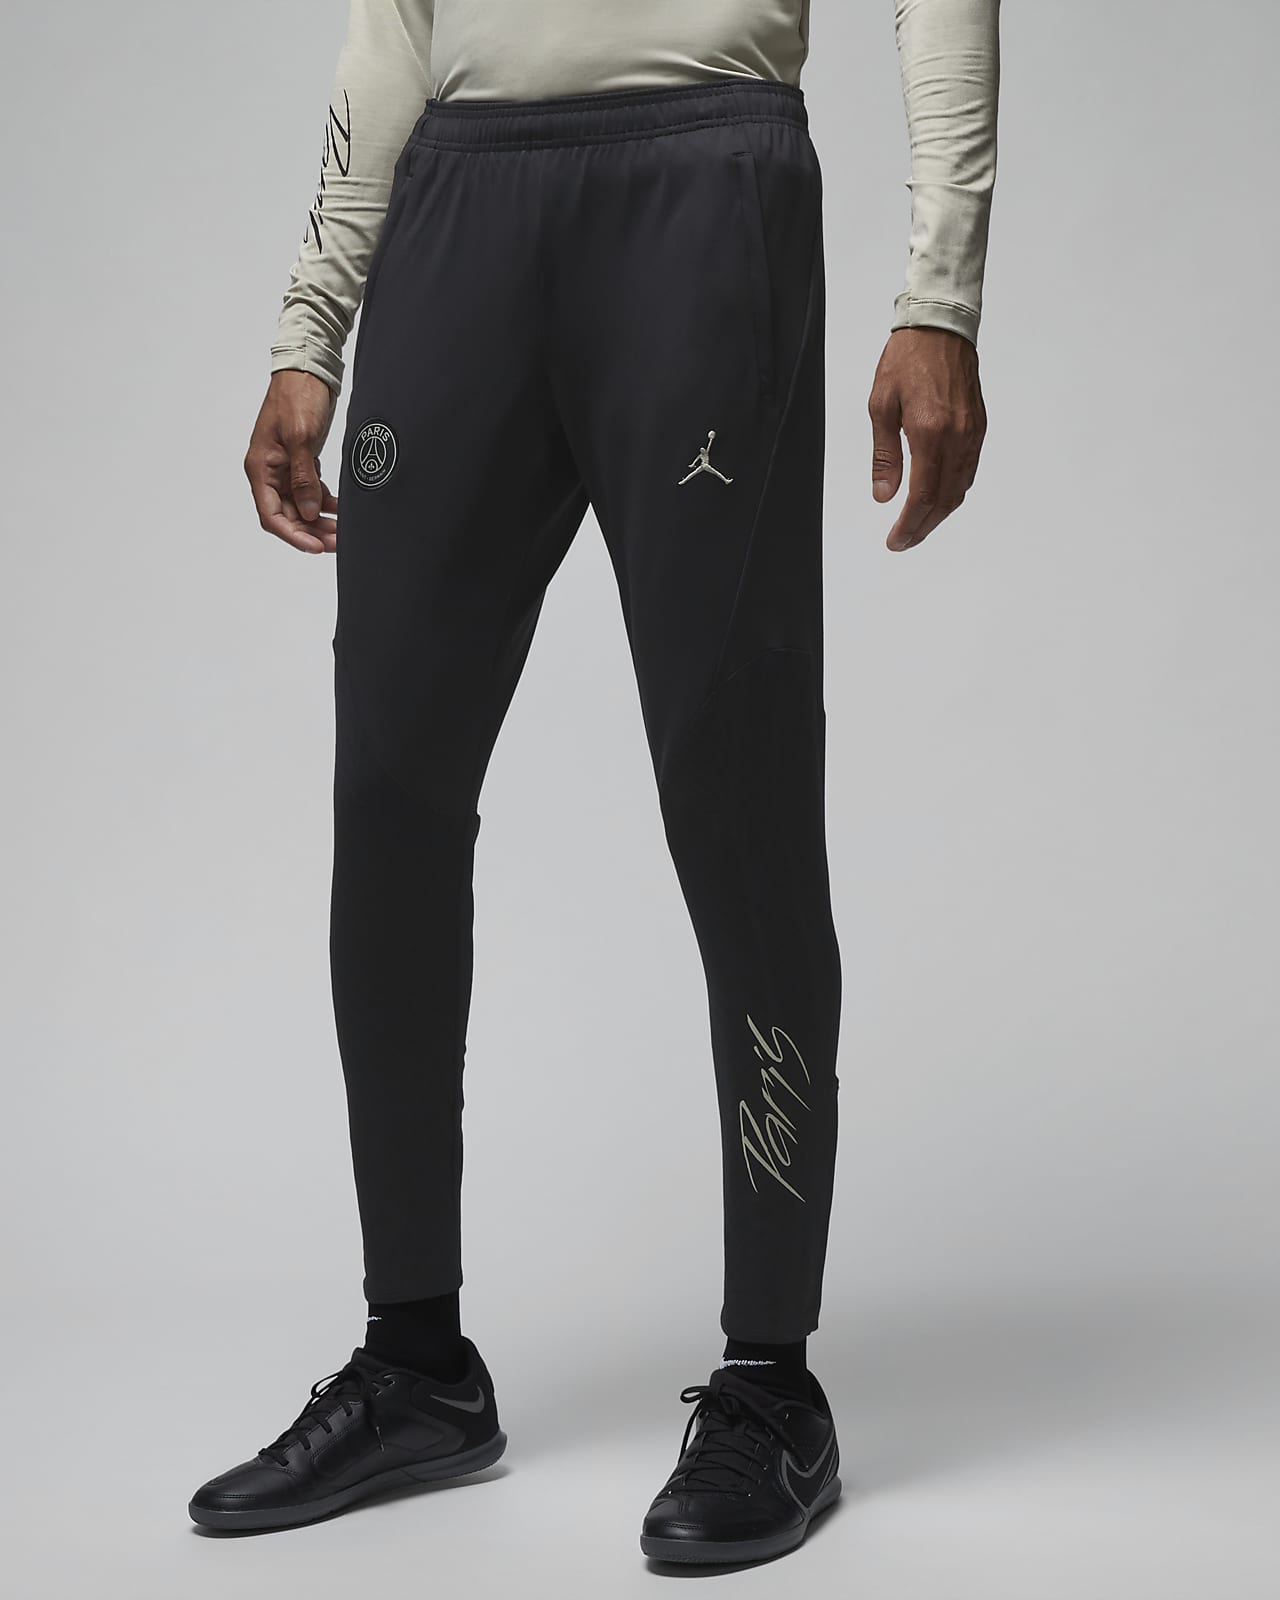 Nike Jordan psg パンツ